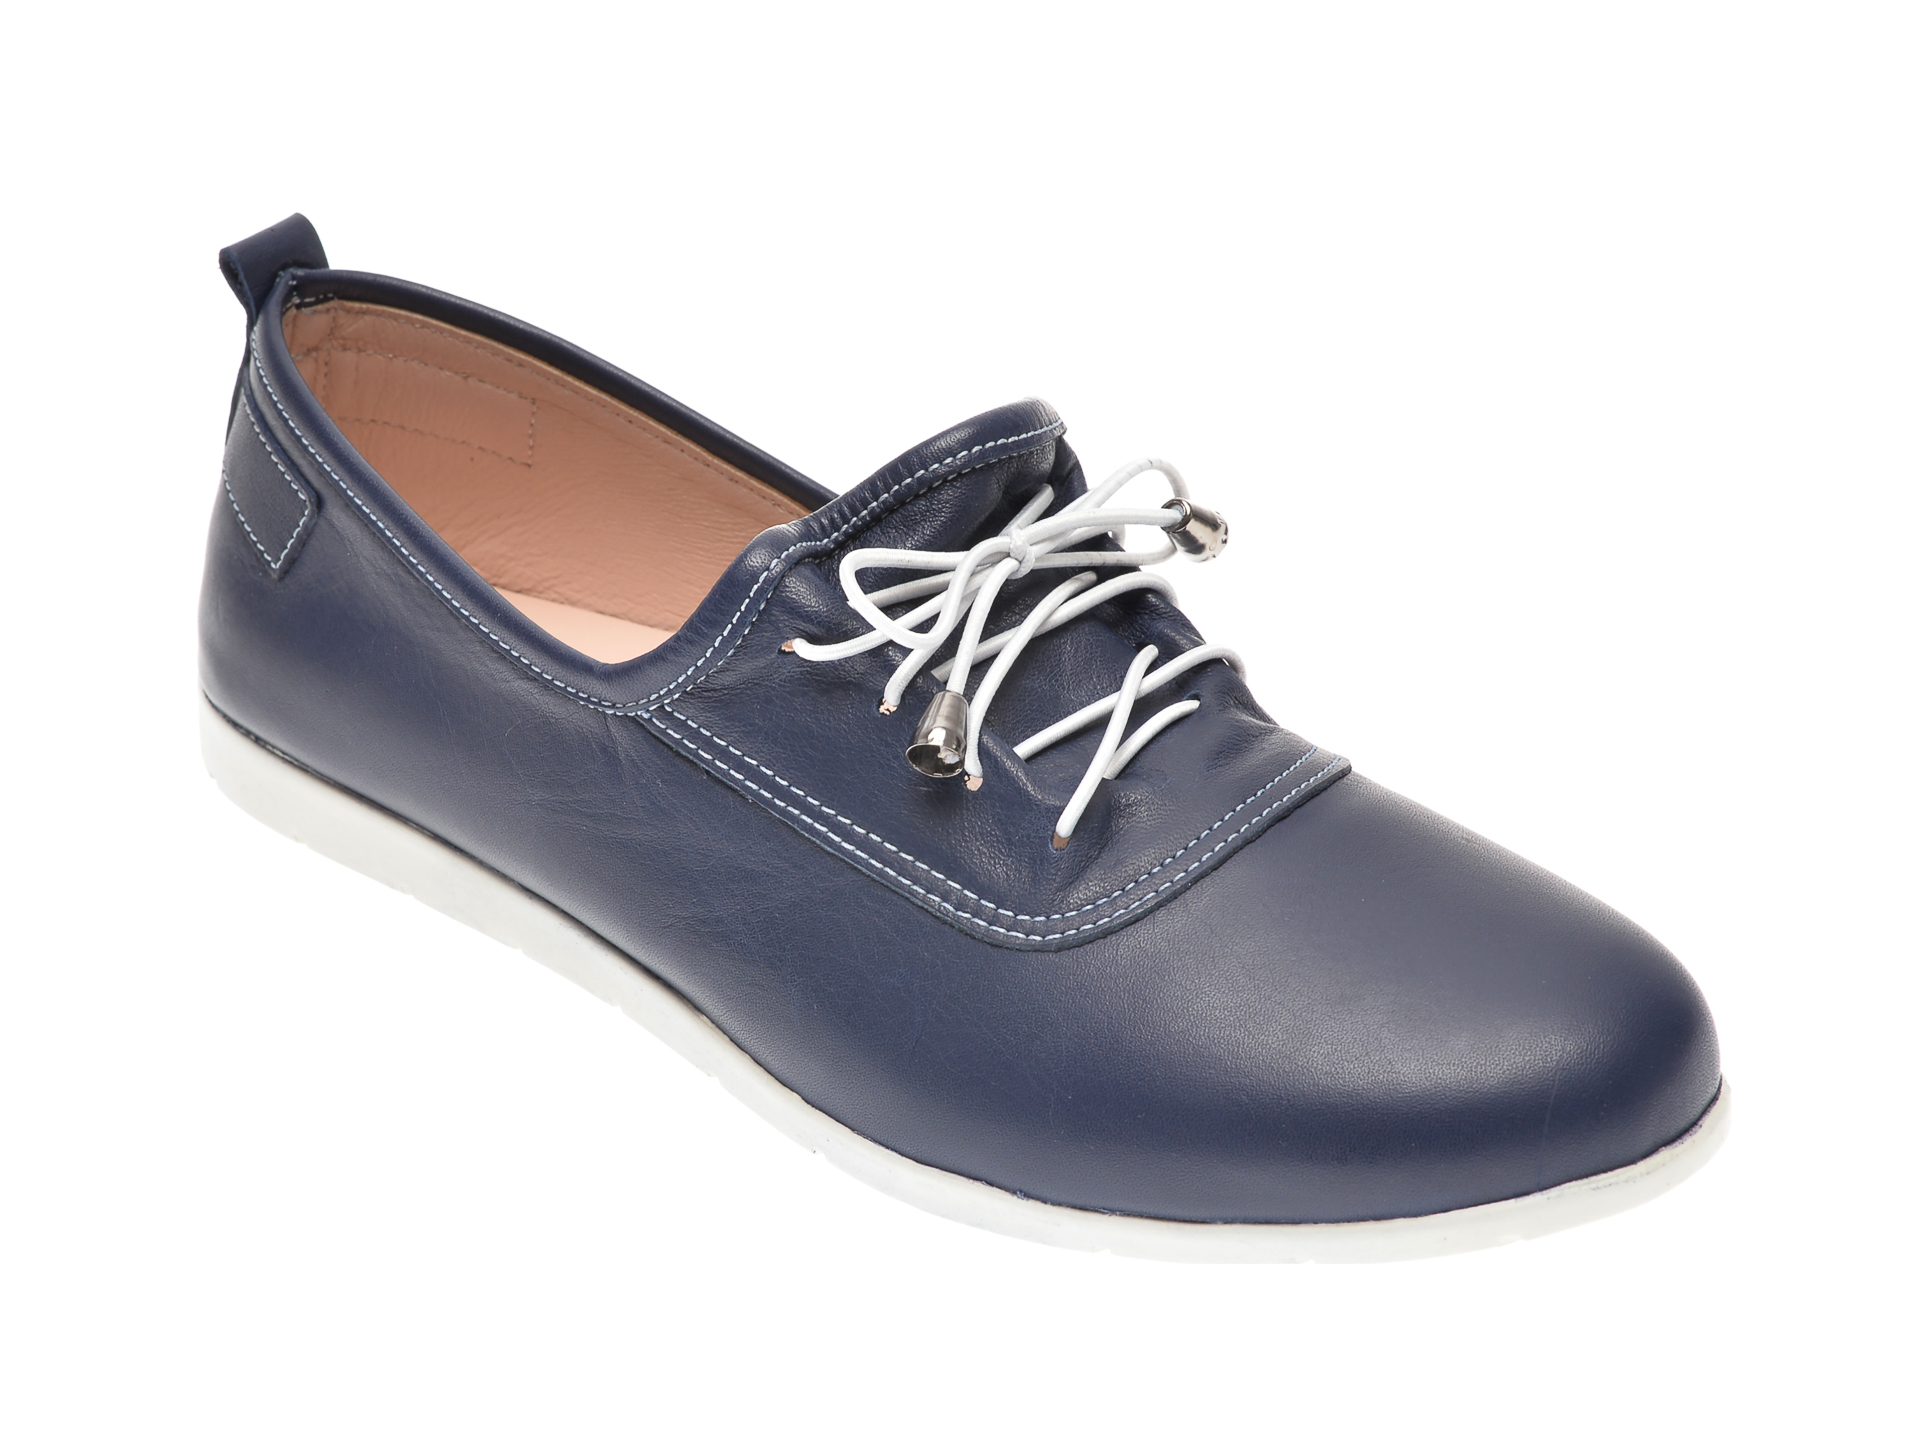 Pantofi ECLIPSE bleumarin, 408, din piele naturala